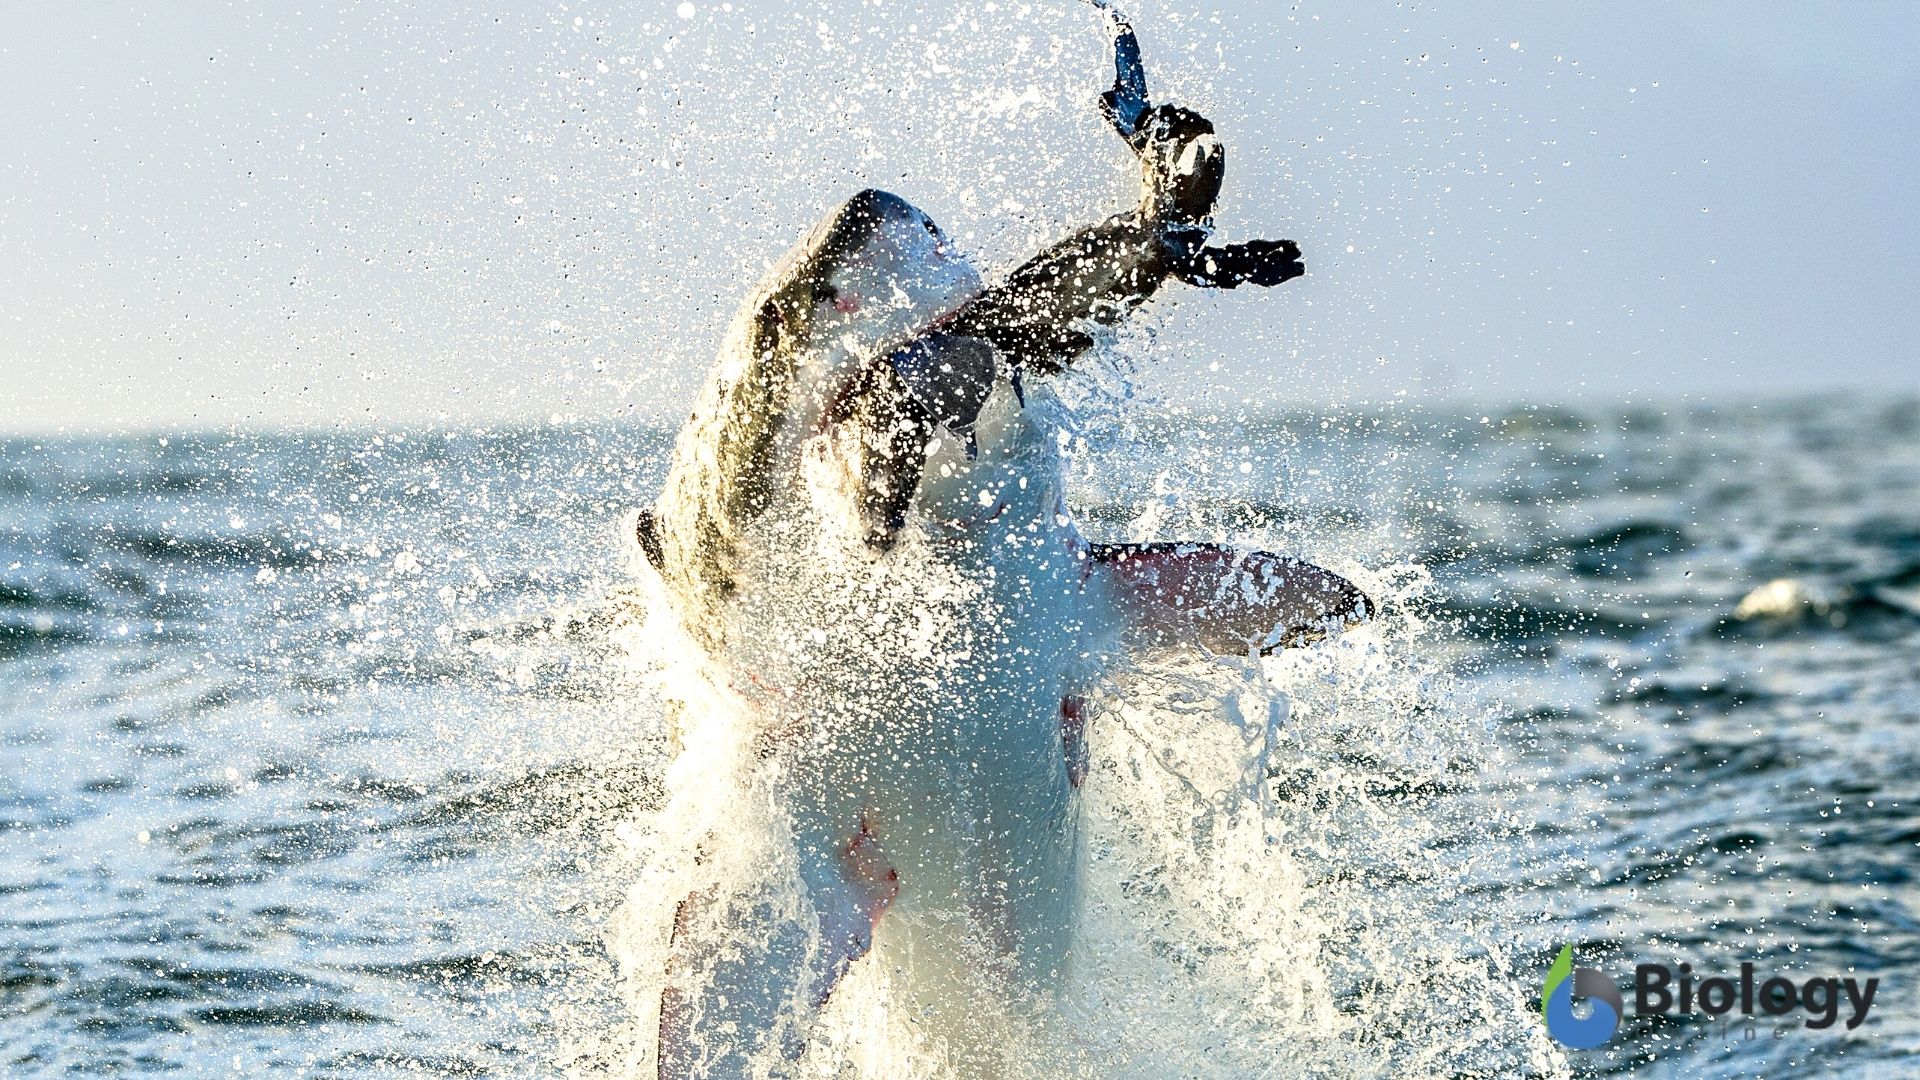 Shark capturing prey